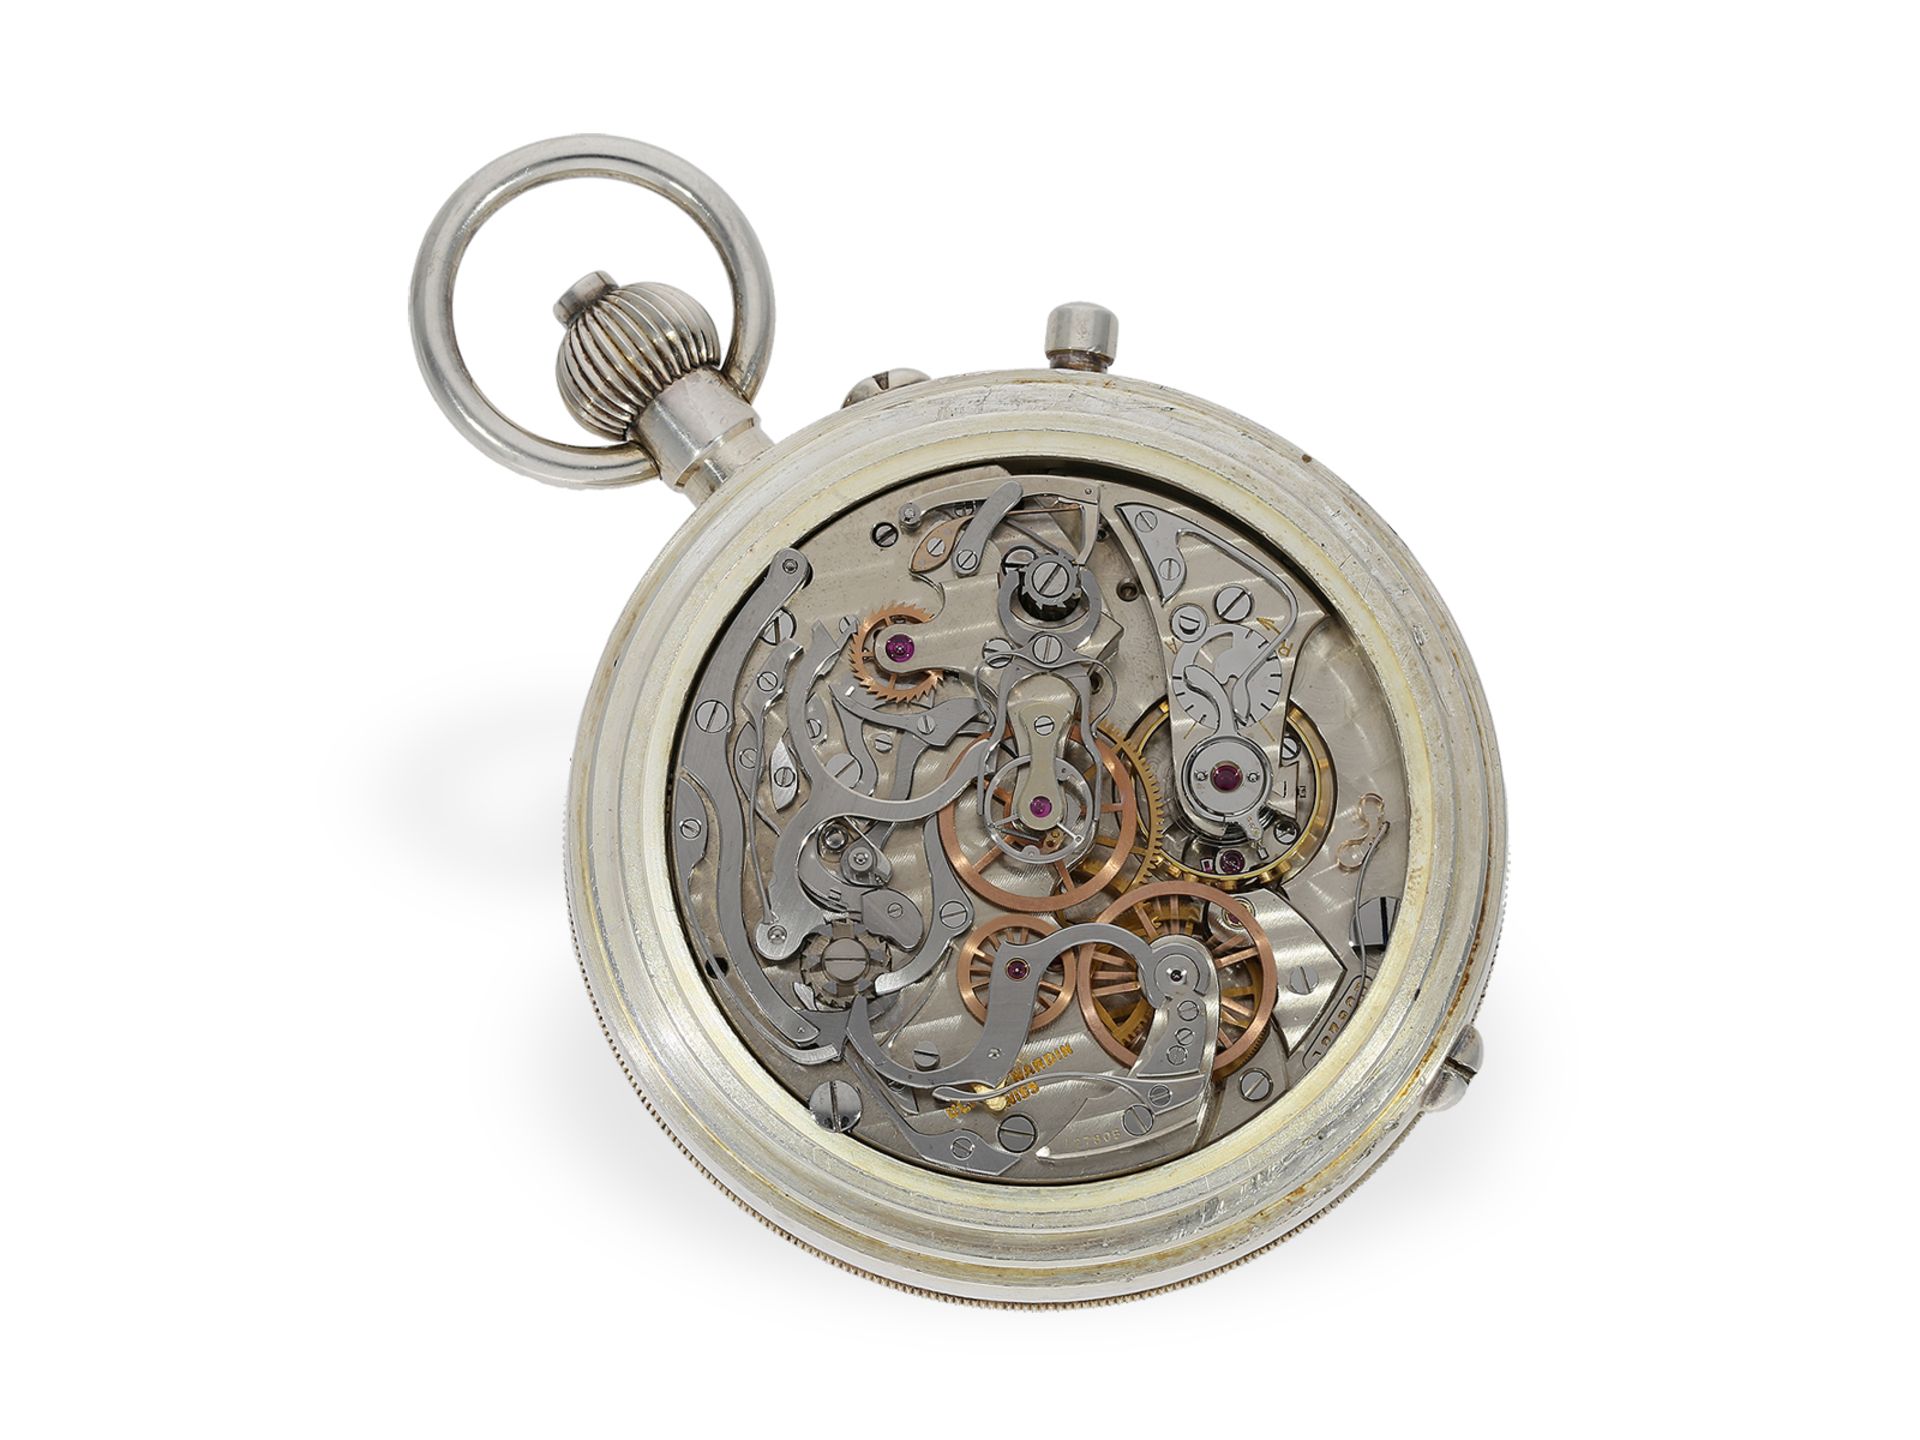 Taschenuhr: extrem rares Beobachtungschronometer mit Schleppzeigerchronograph, Ulysse Nardin 24''CCR - Bild 2 aus 5